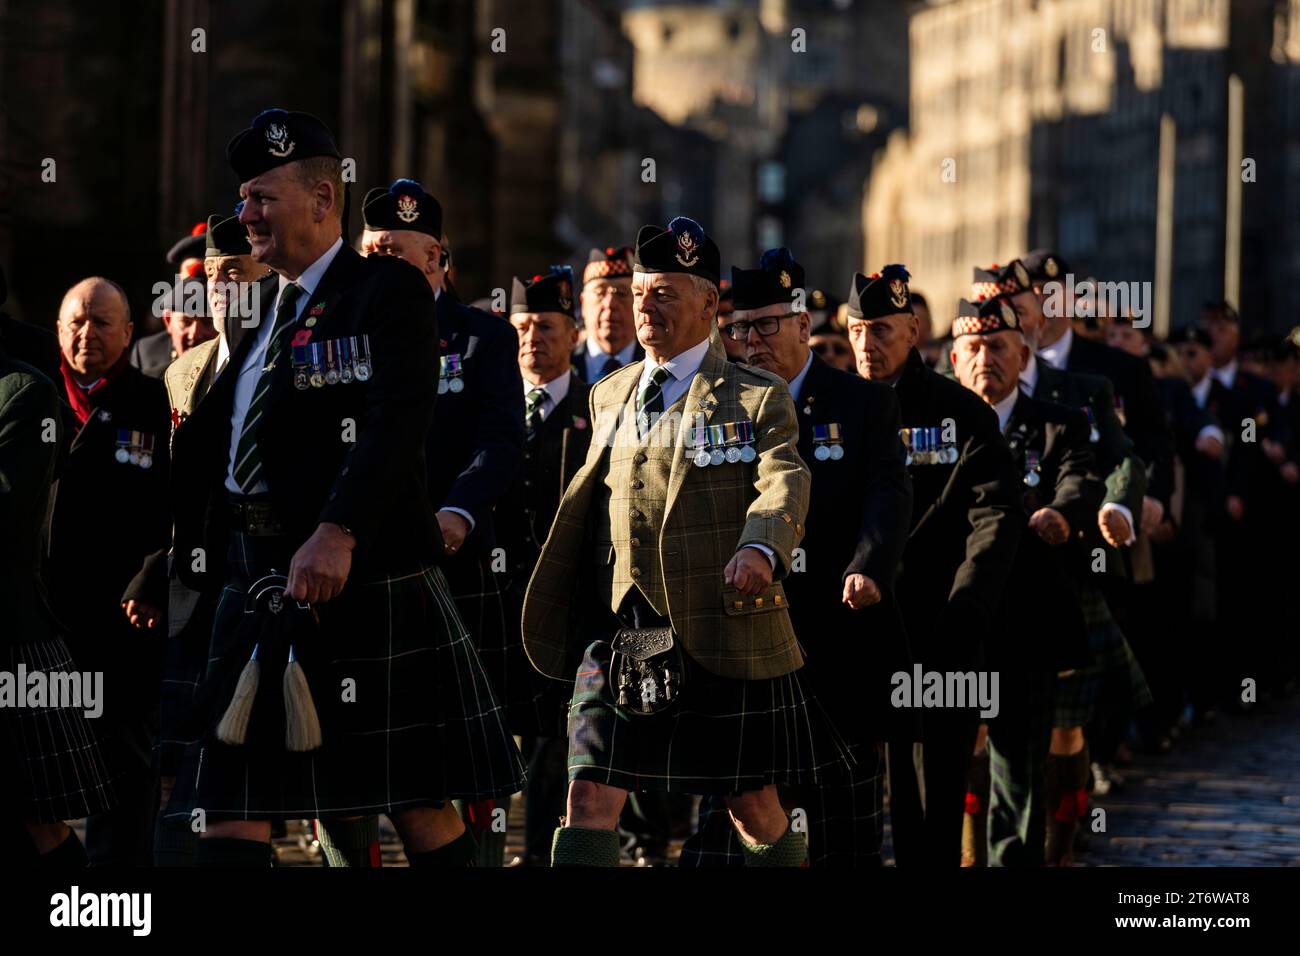 Militärparade während der Gedenkfeier am Sonntag in Edinburgh City Chambers auf der Royal Mile in Edinburgh. Quelle: Euan Cherry Stockfoto